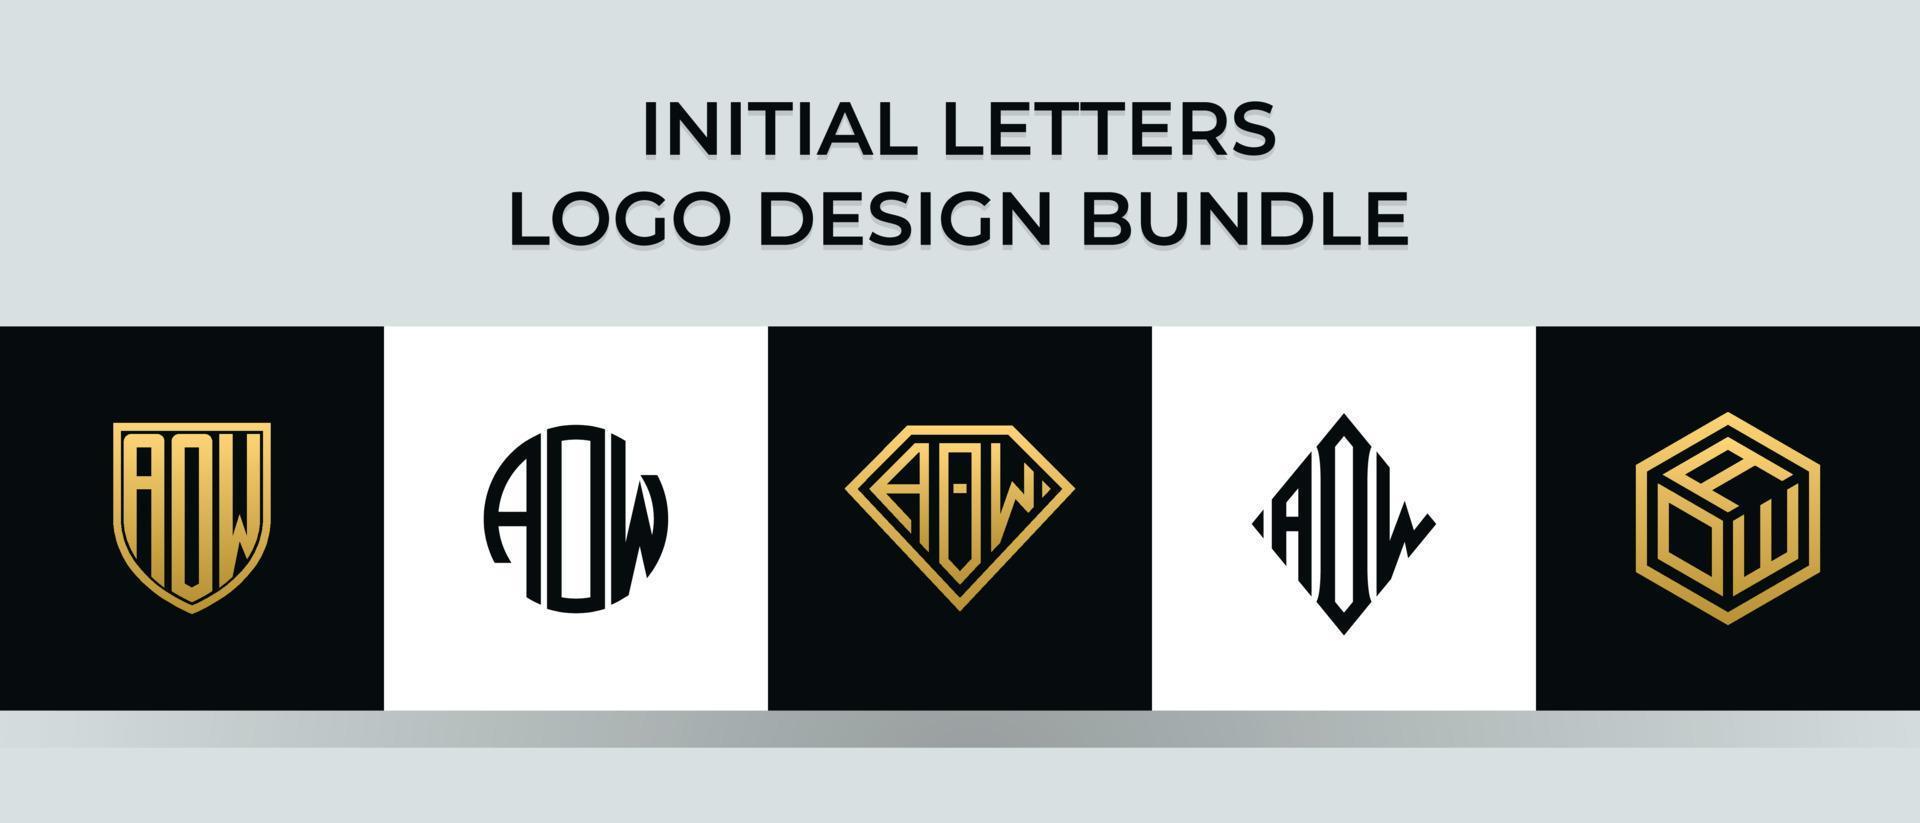 letras iniciais aow logo designs pacote vetor